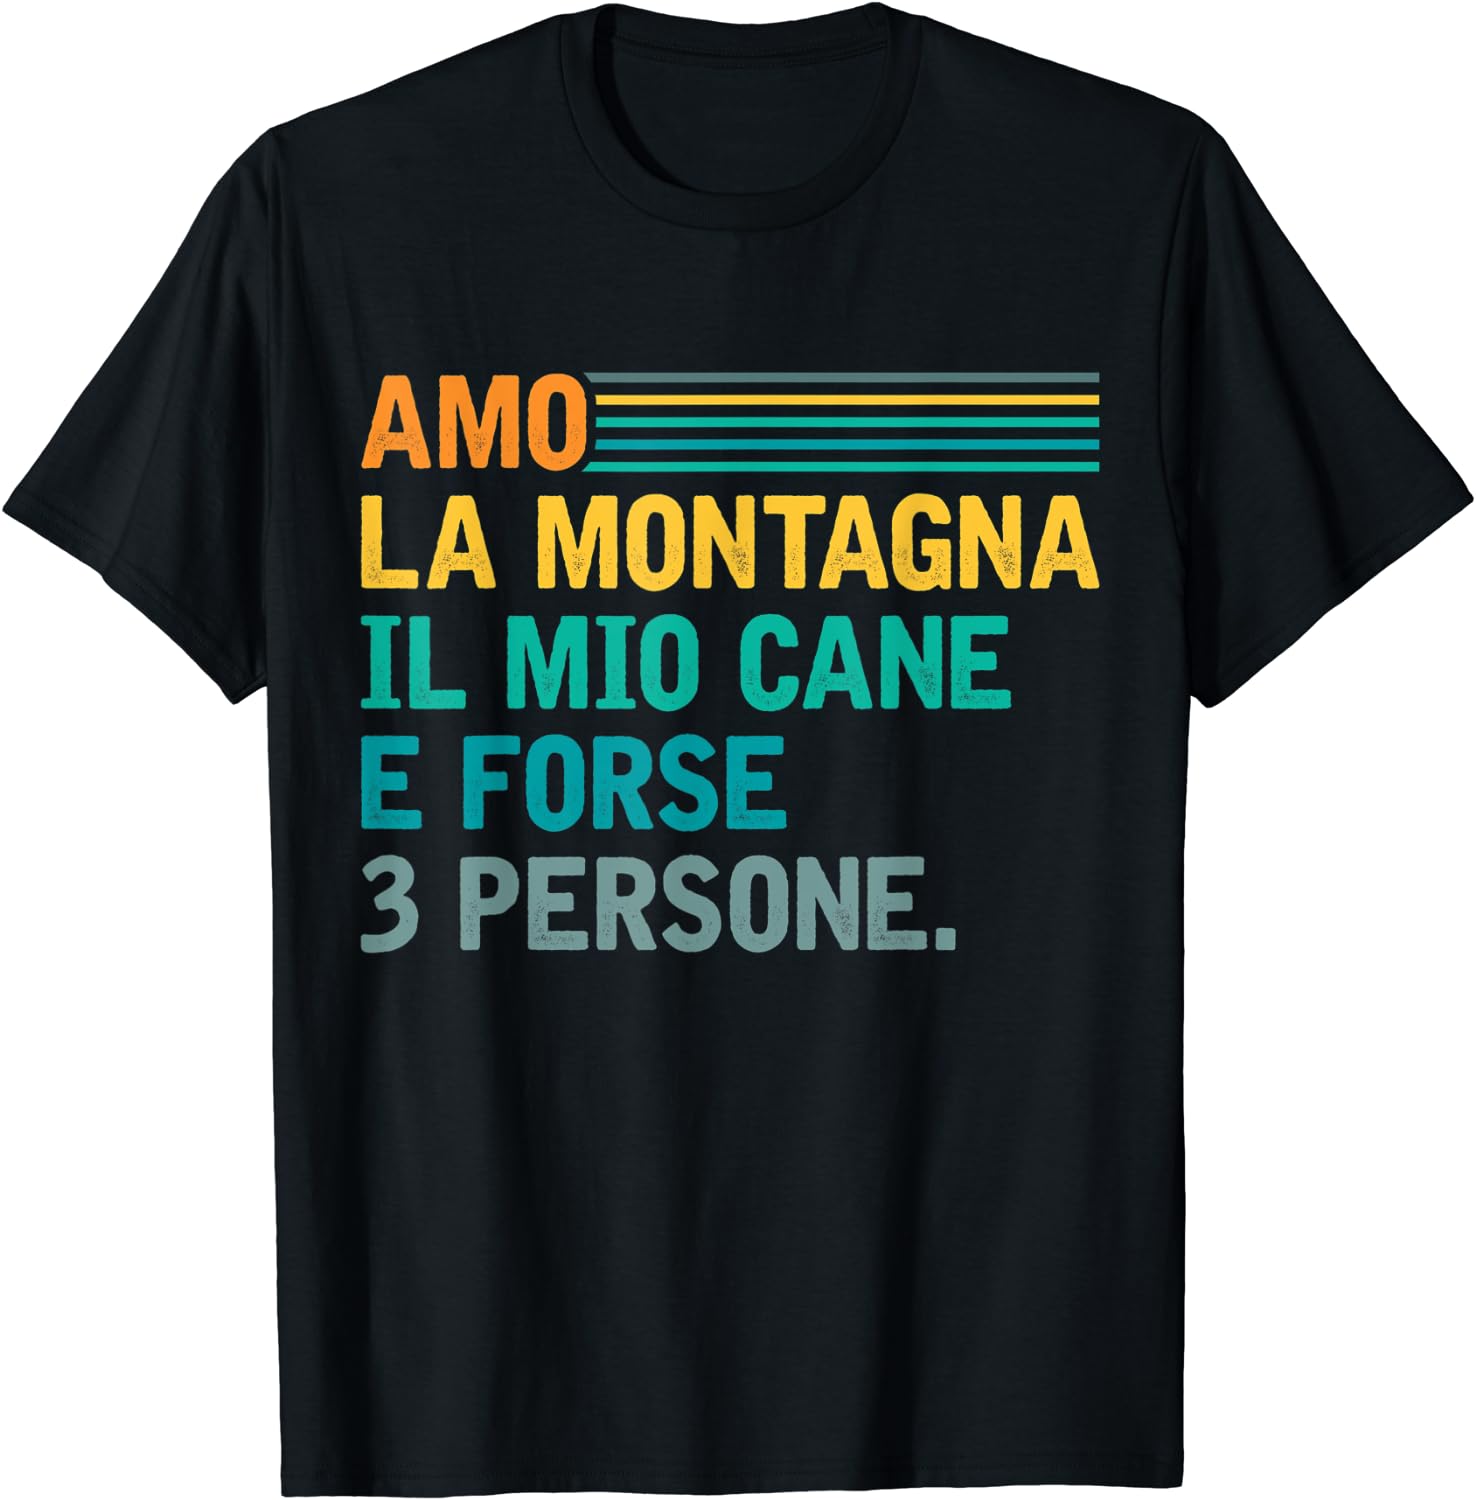 Discover Maglietta T-Shirt Giornata Mondiale Del Cane Uomo Donna Bambini Amo La Montagna Cane E Forse 3 Persone Escursionista